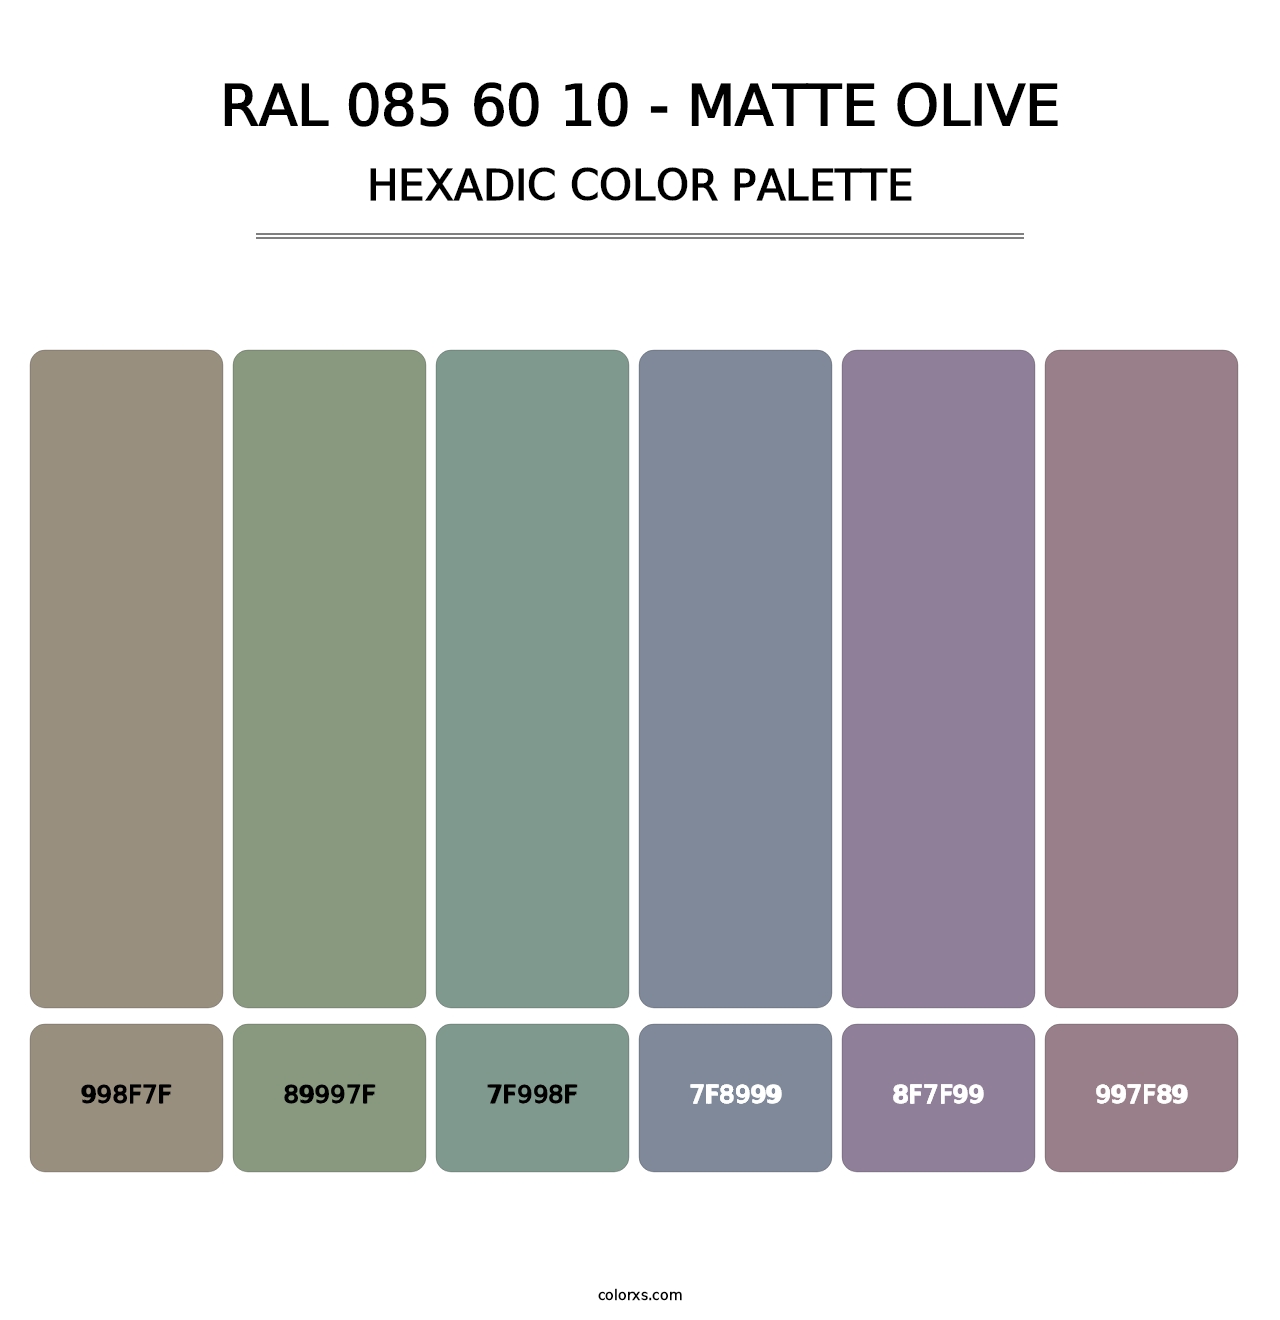 RAL 085 60 10 - Matte Olive - Hexadic Color Palette